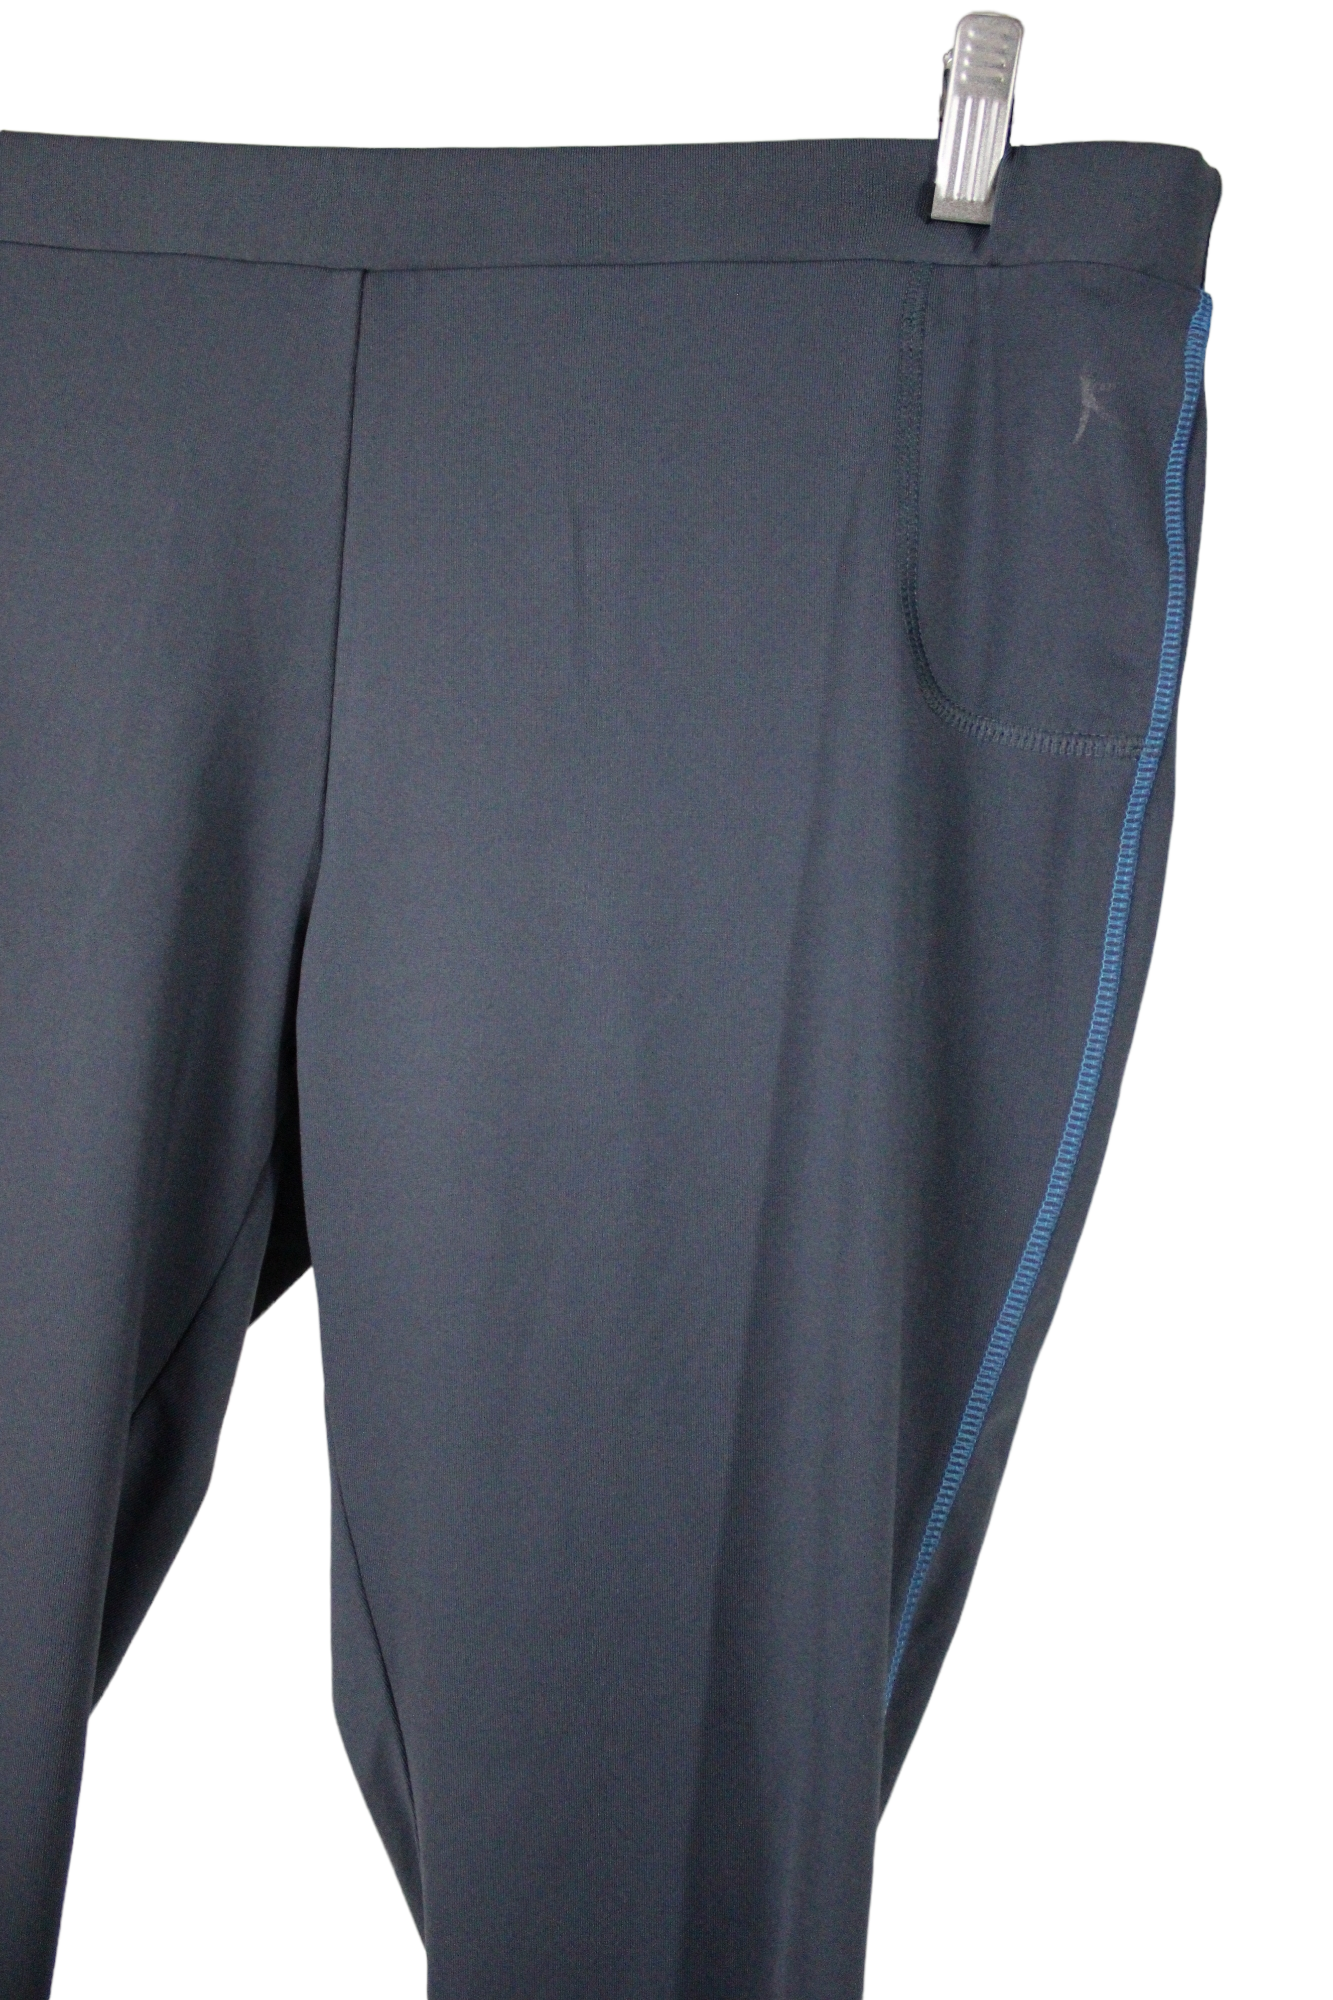 Danskin Now Gray Sweatpants Size XL - 10% off